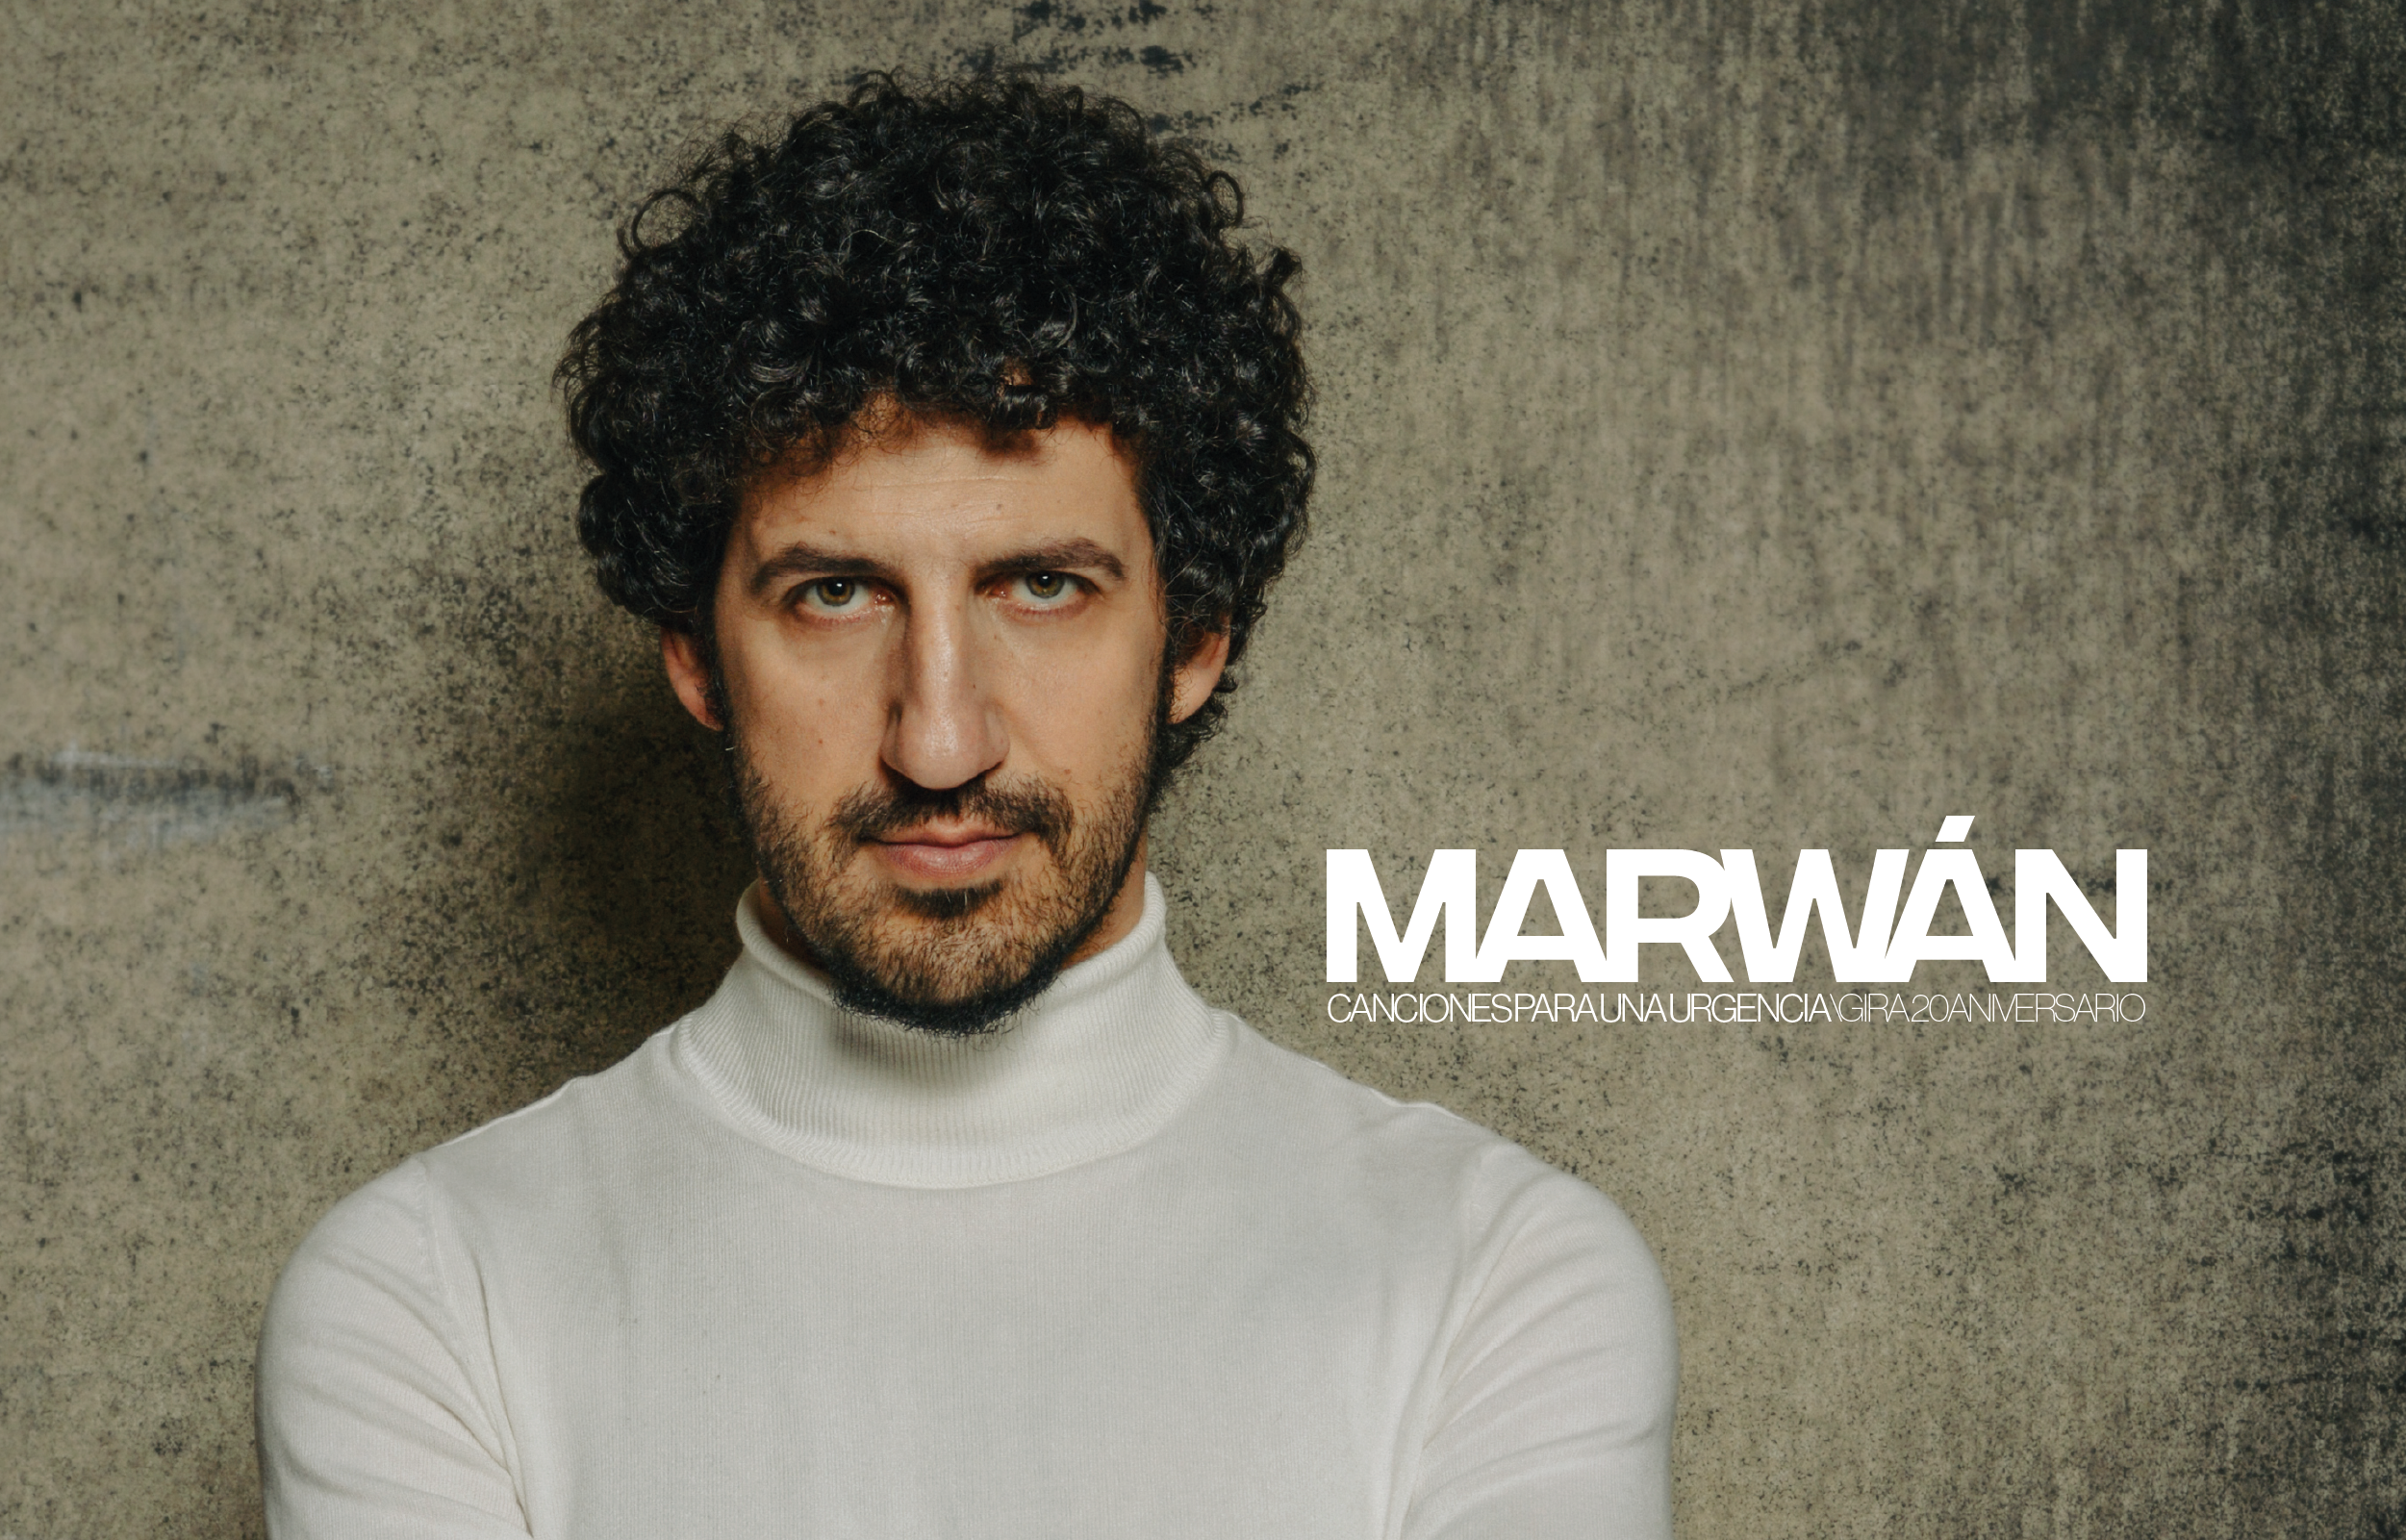 Marwan 20 años canciones emergencia